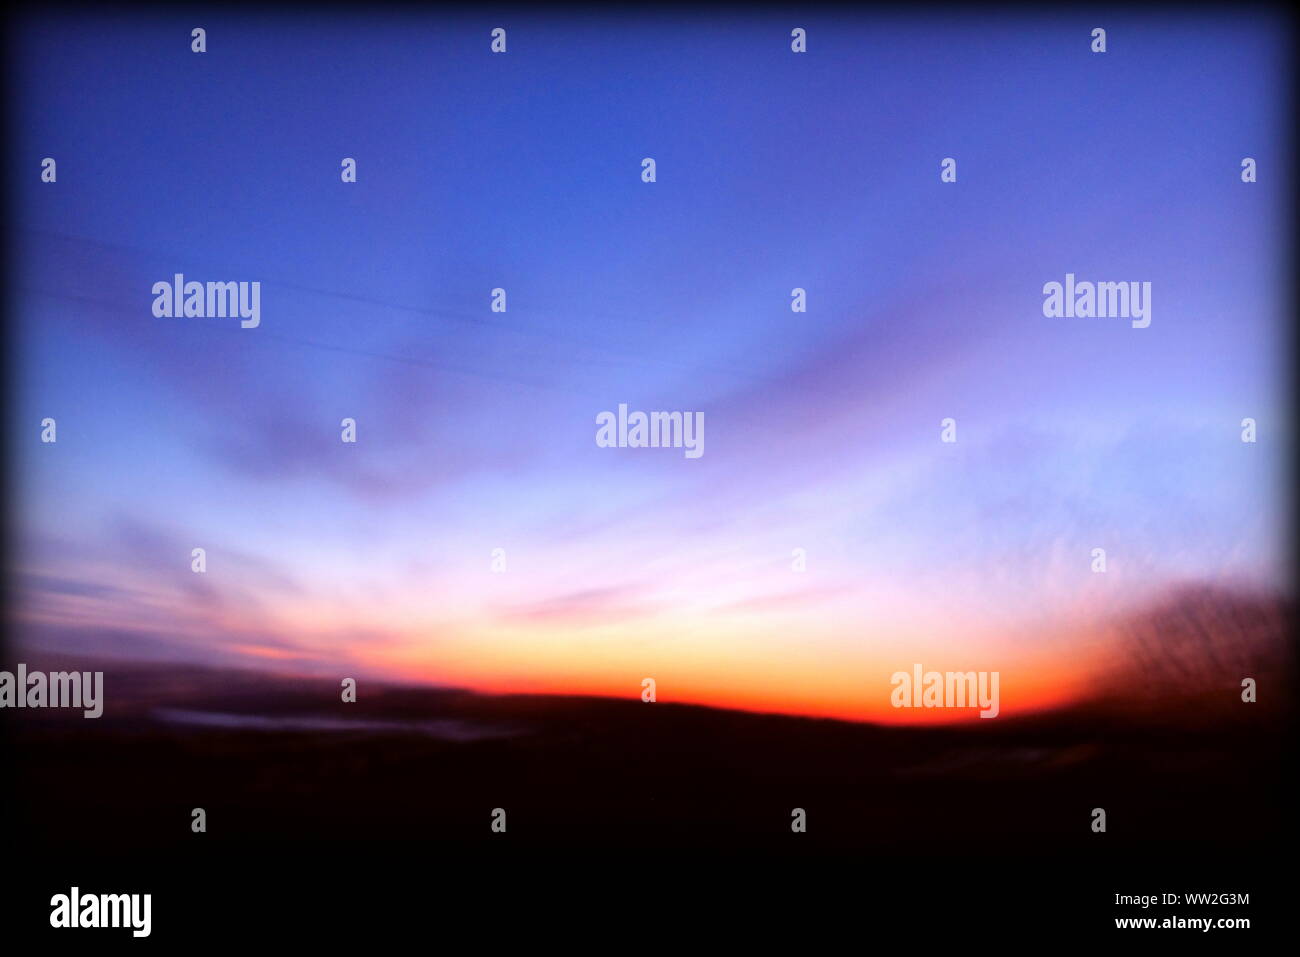 Scène onirique et magique au lever du soleil prises depuis une voiture en mouvement, paysage flou Banque D'Images